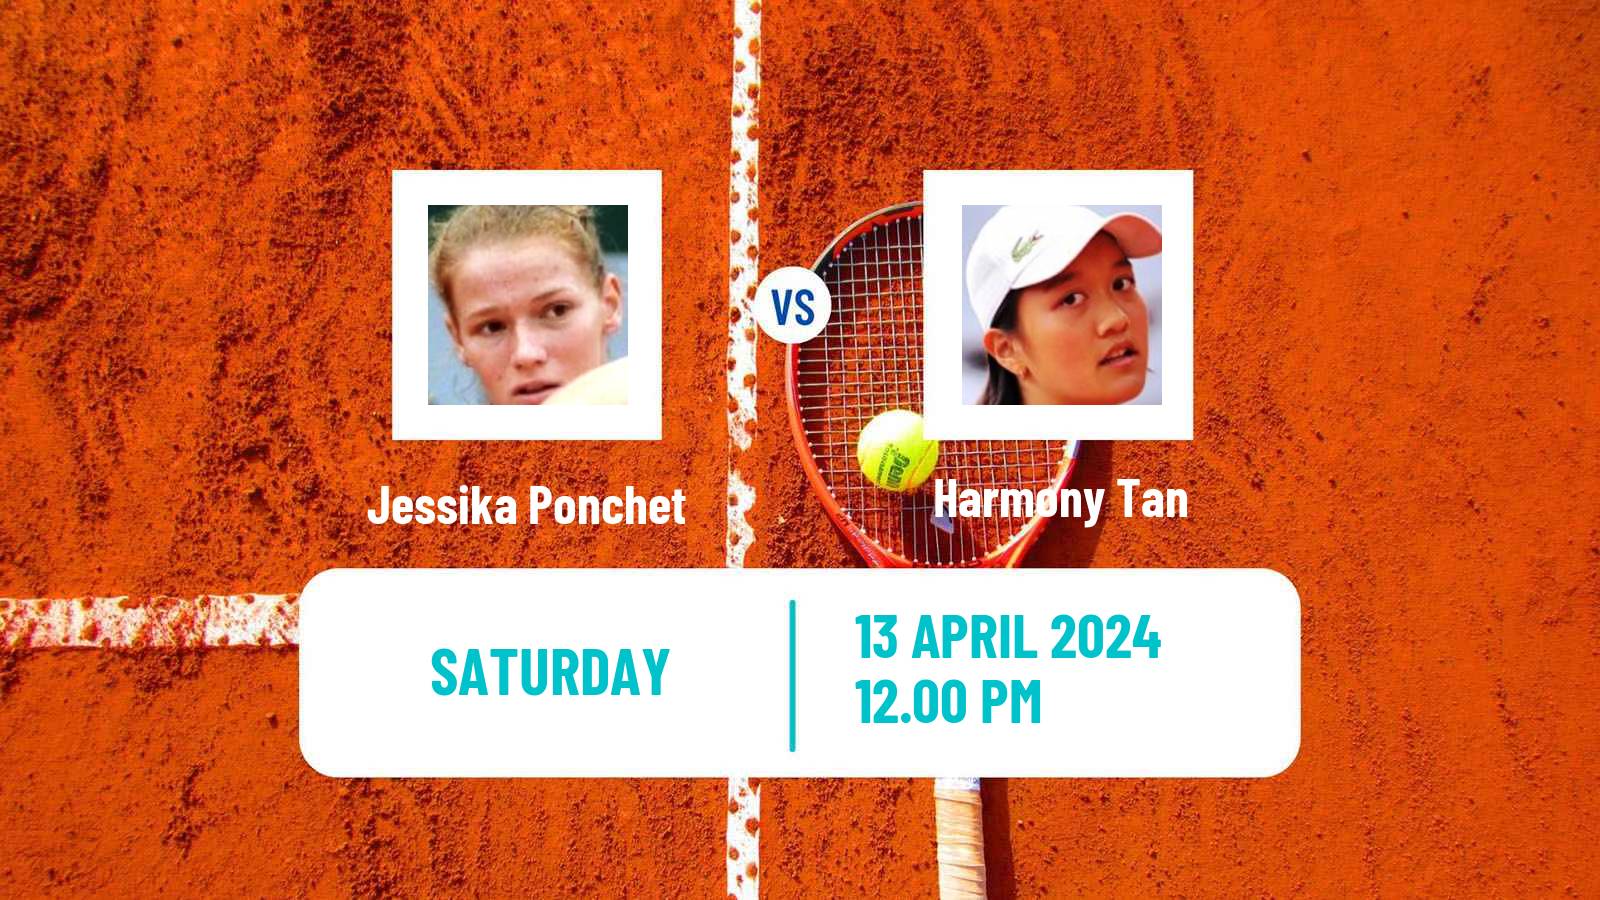 Tennis WTA Rouen Jessika Ponchet - Harmony Tan